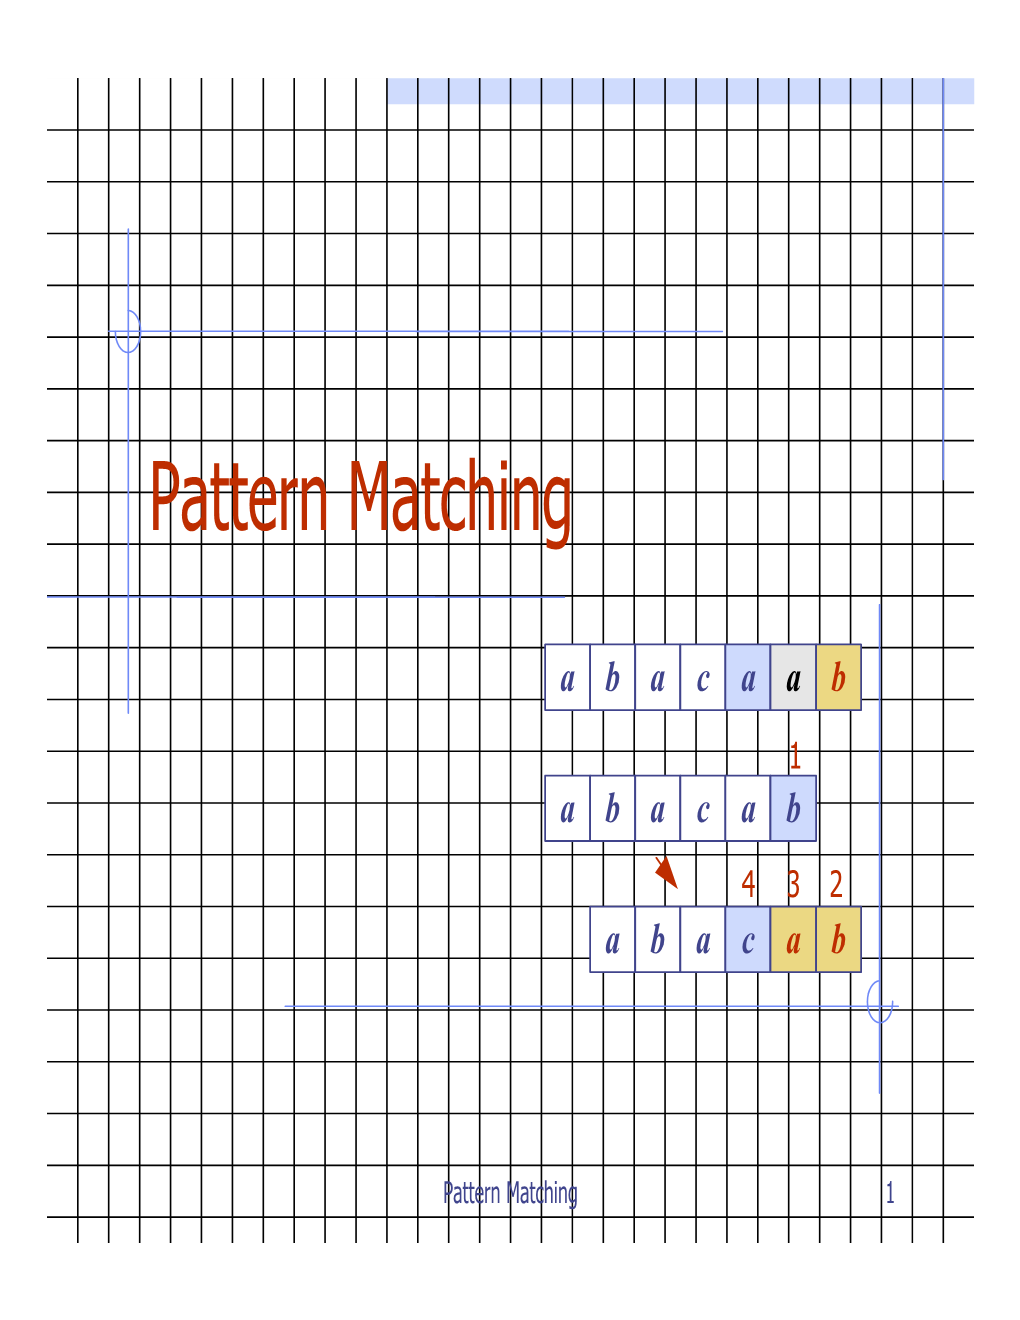 Pattern Matching